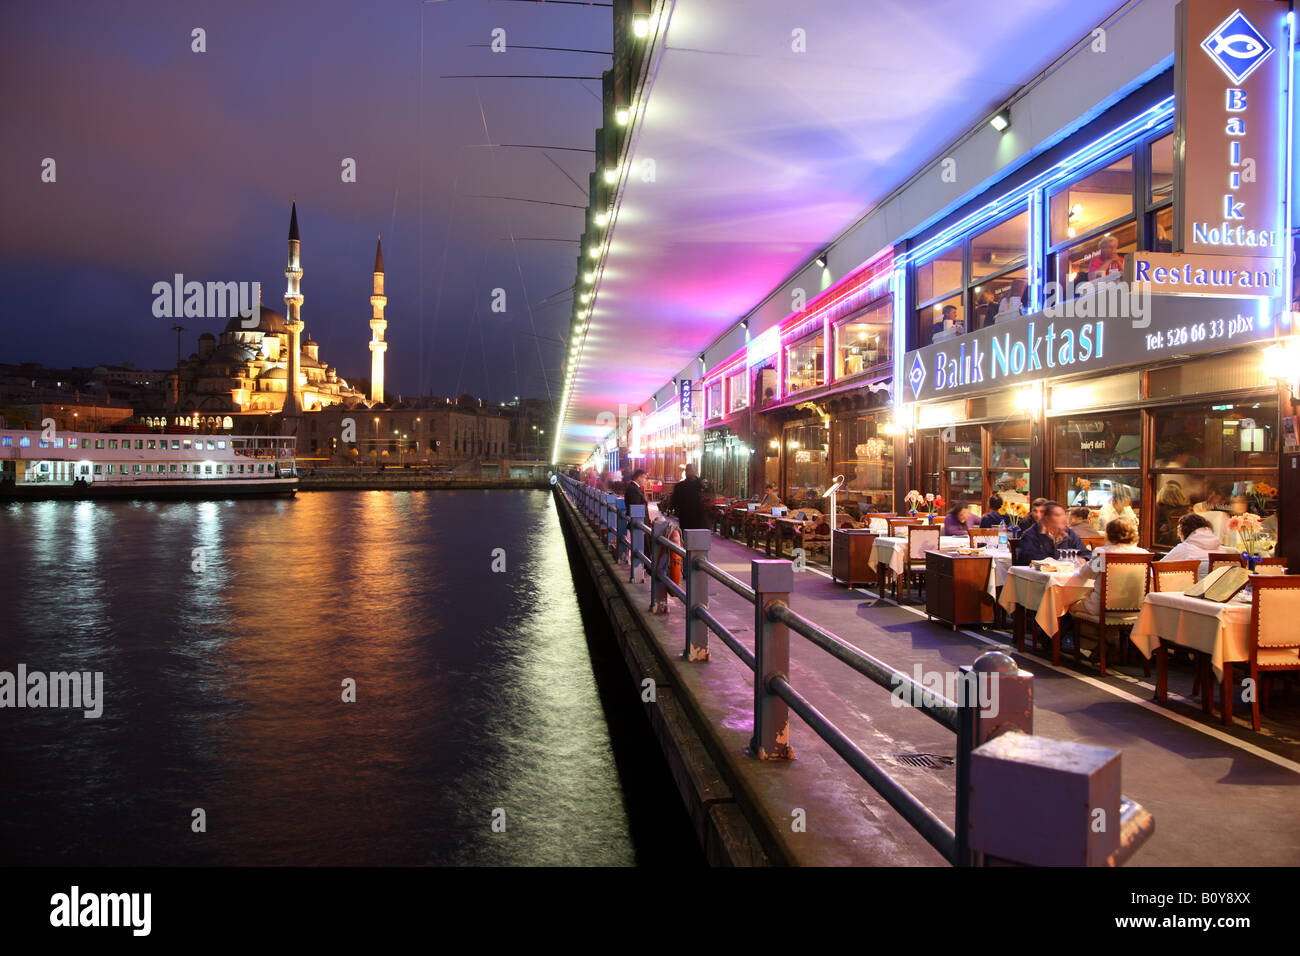 TUR der Türkei Istanbul Galata Brücke über das Goldene Horn Meerenge Restaurants und Bars in den unteren Hebel der Brücke Stockfoto